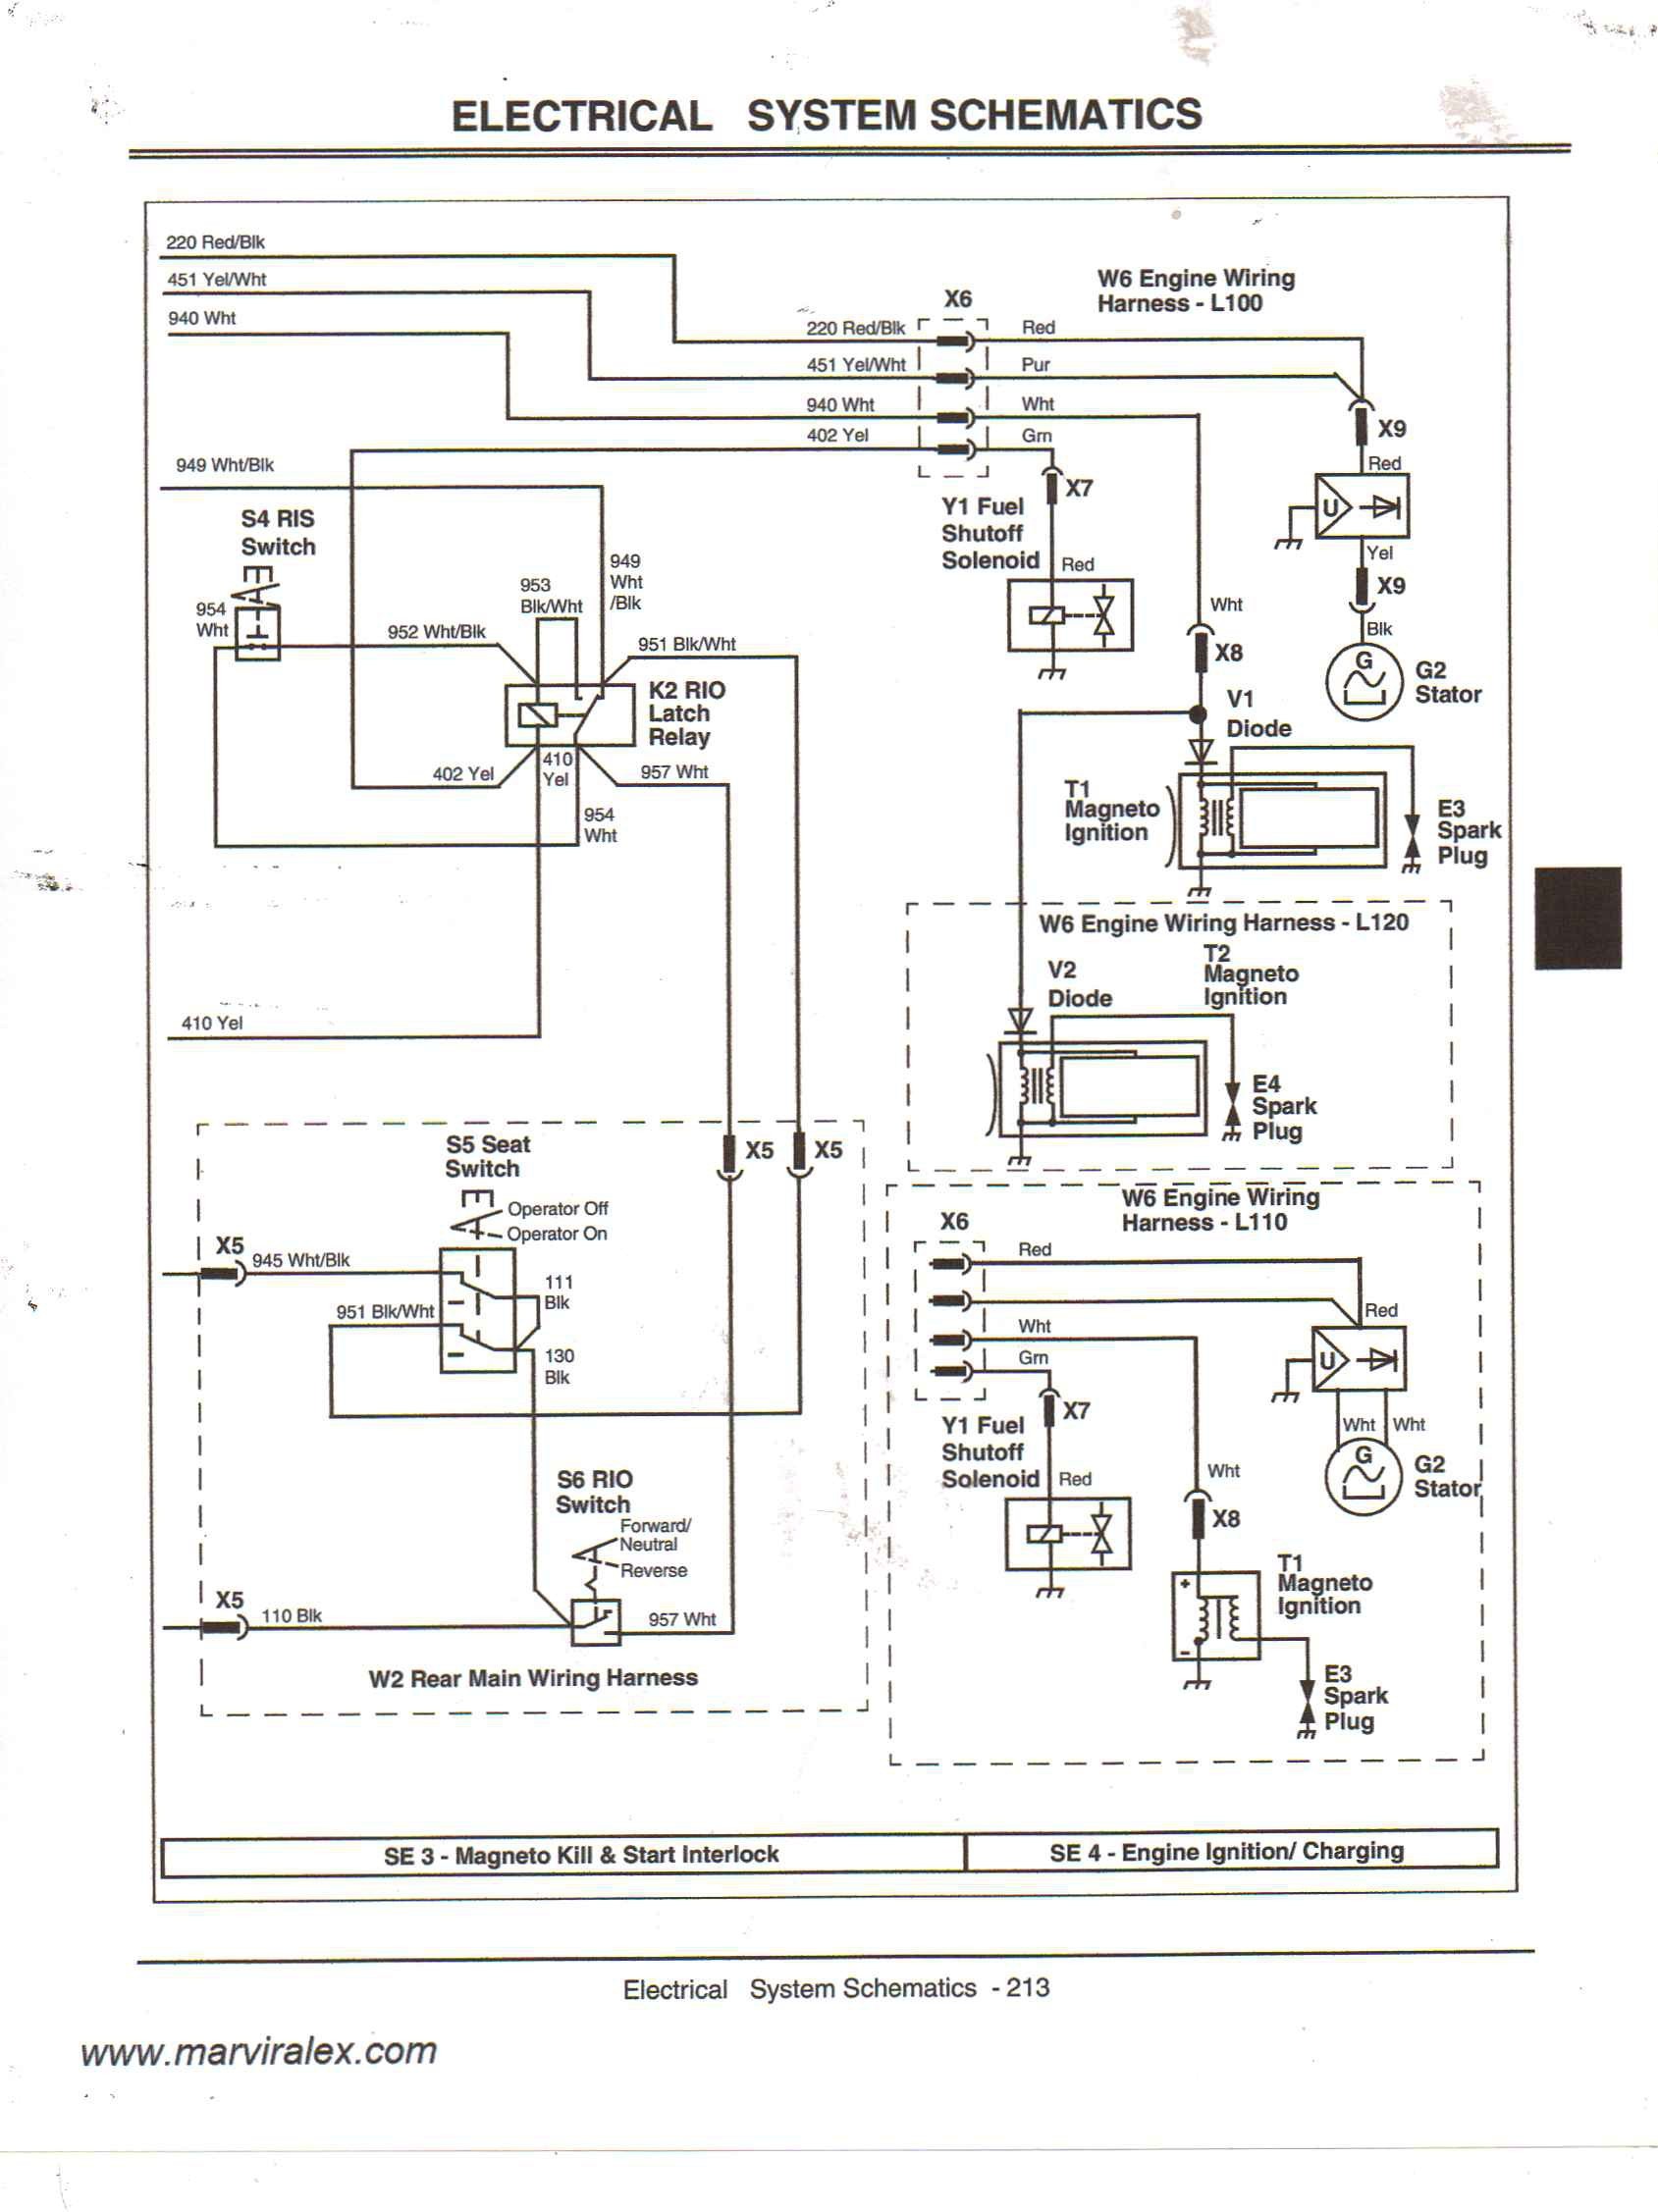 Wiring Diagram for John Deere Gator New Diagram as Well John Deere Gator Wiring Diagram Wiring